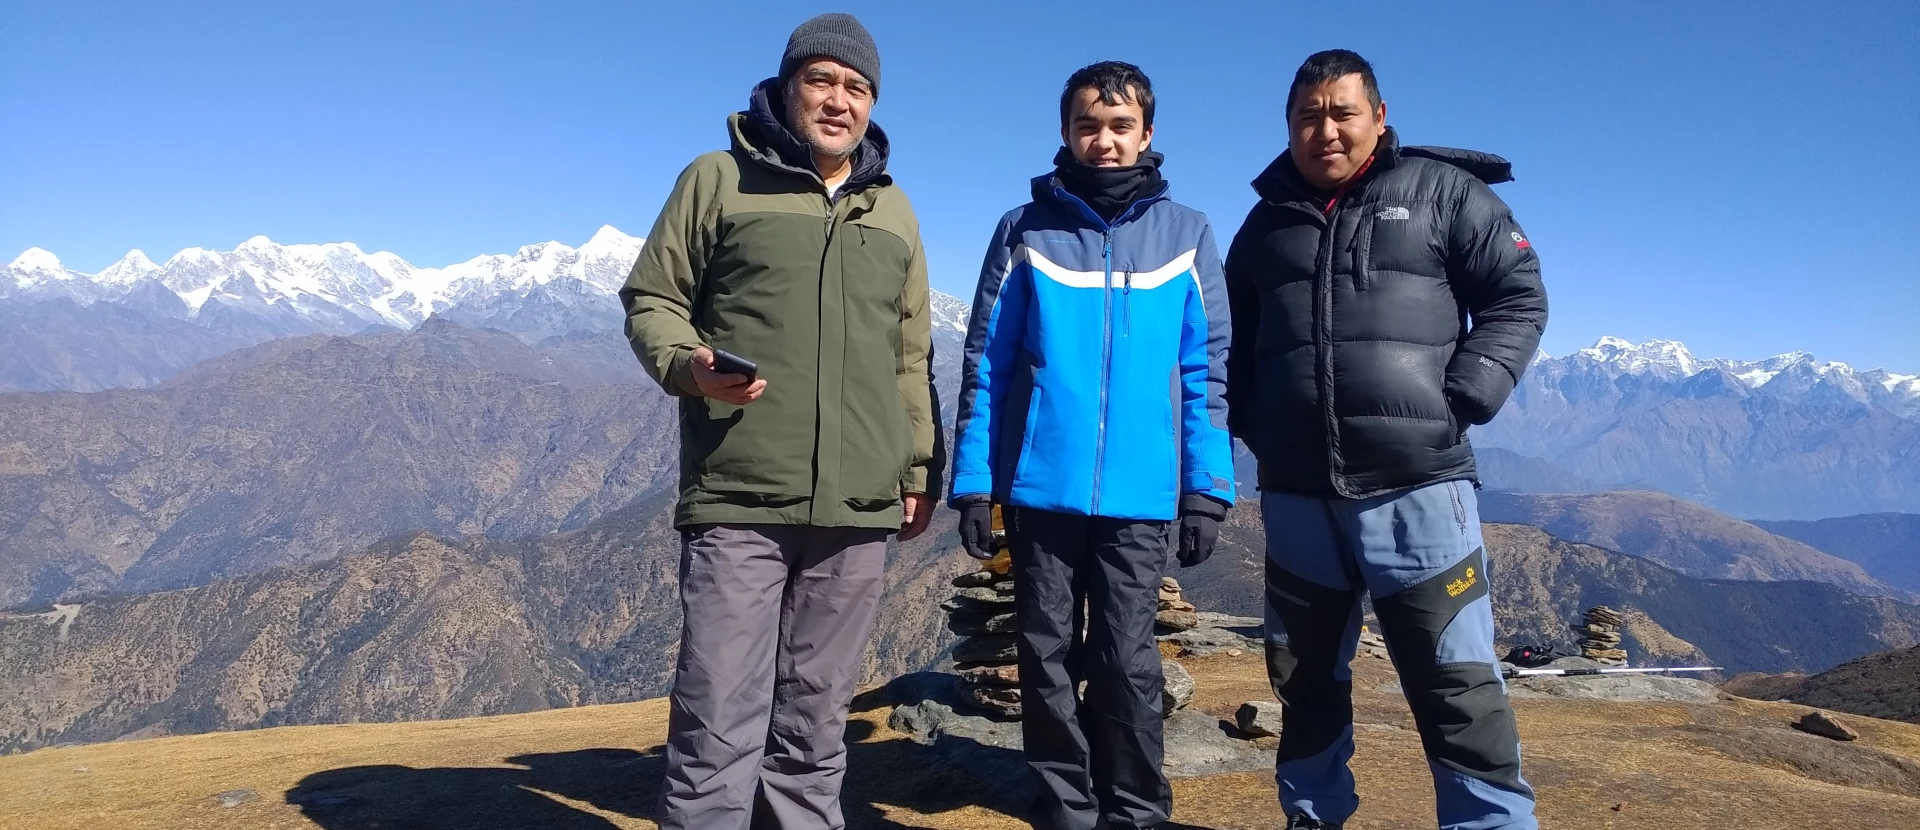 Brief Information About Pikey Peak Trekking In Nepal